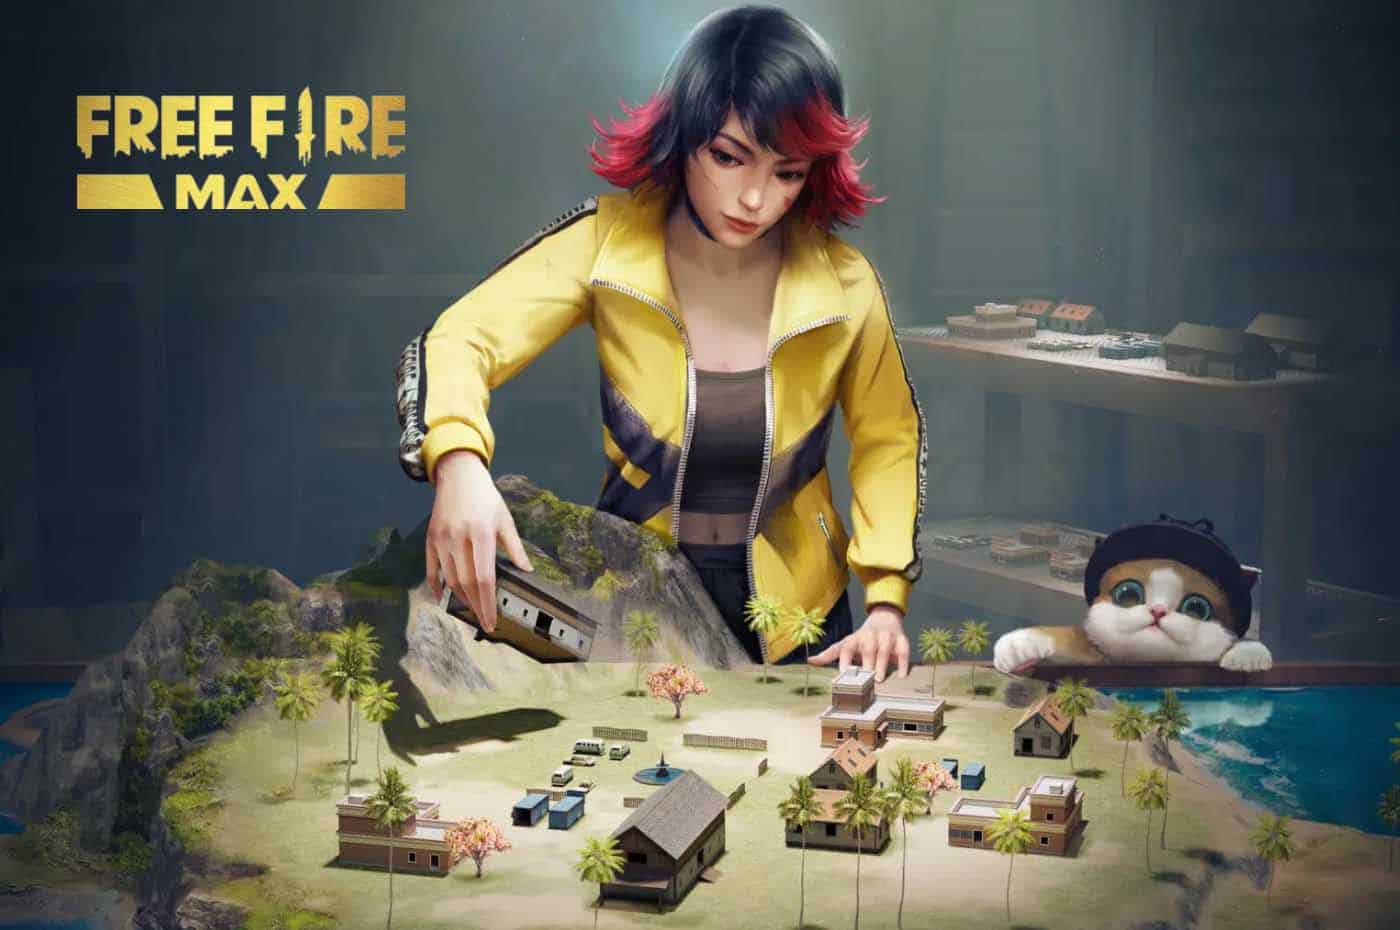 Free Fire Max começa novo beta em celulares com no mínimo 2 GB de RAM